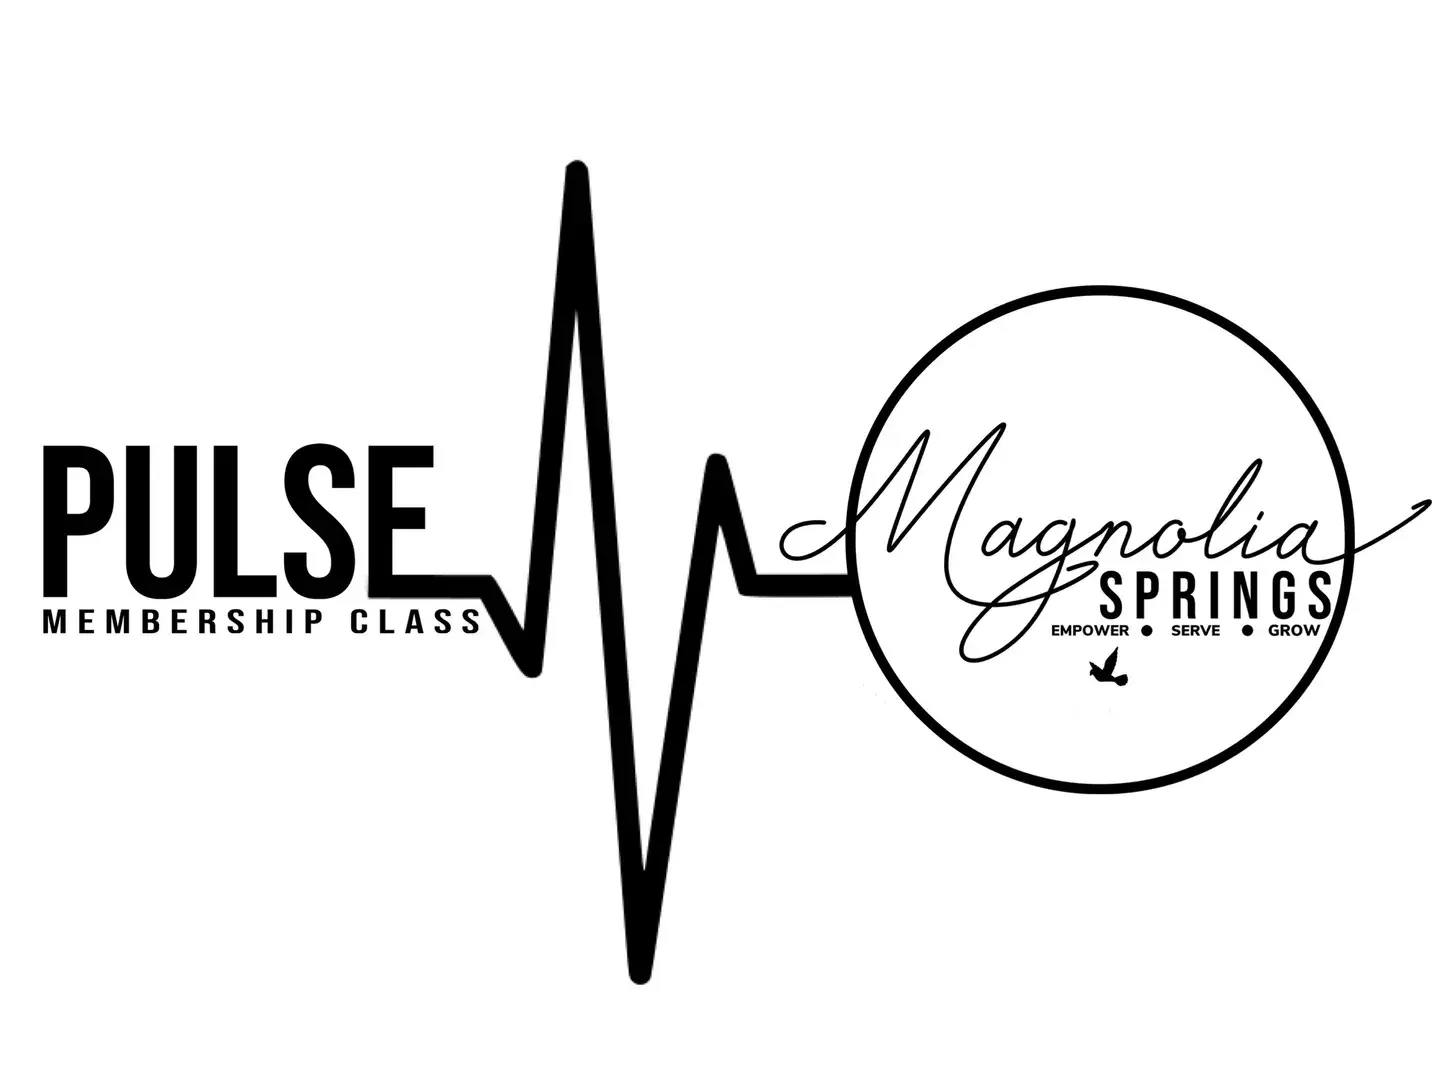 Pulse Membership Class logo banner